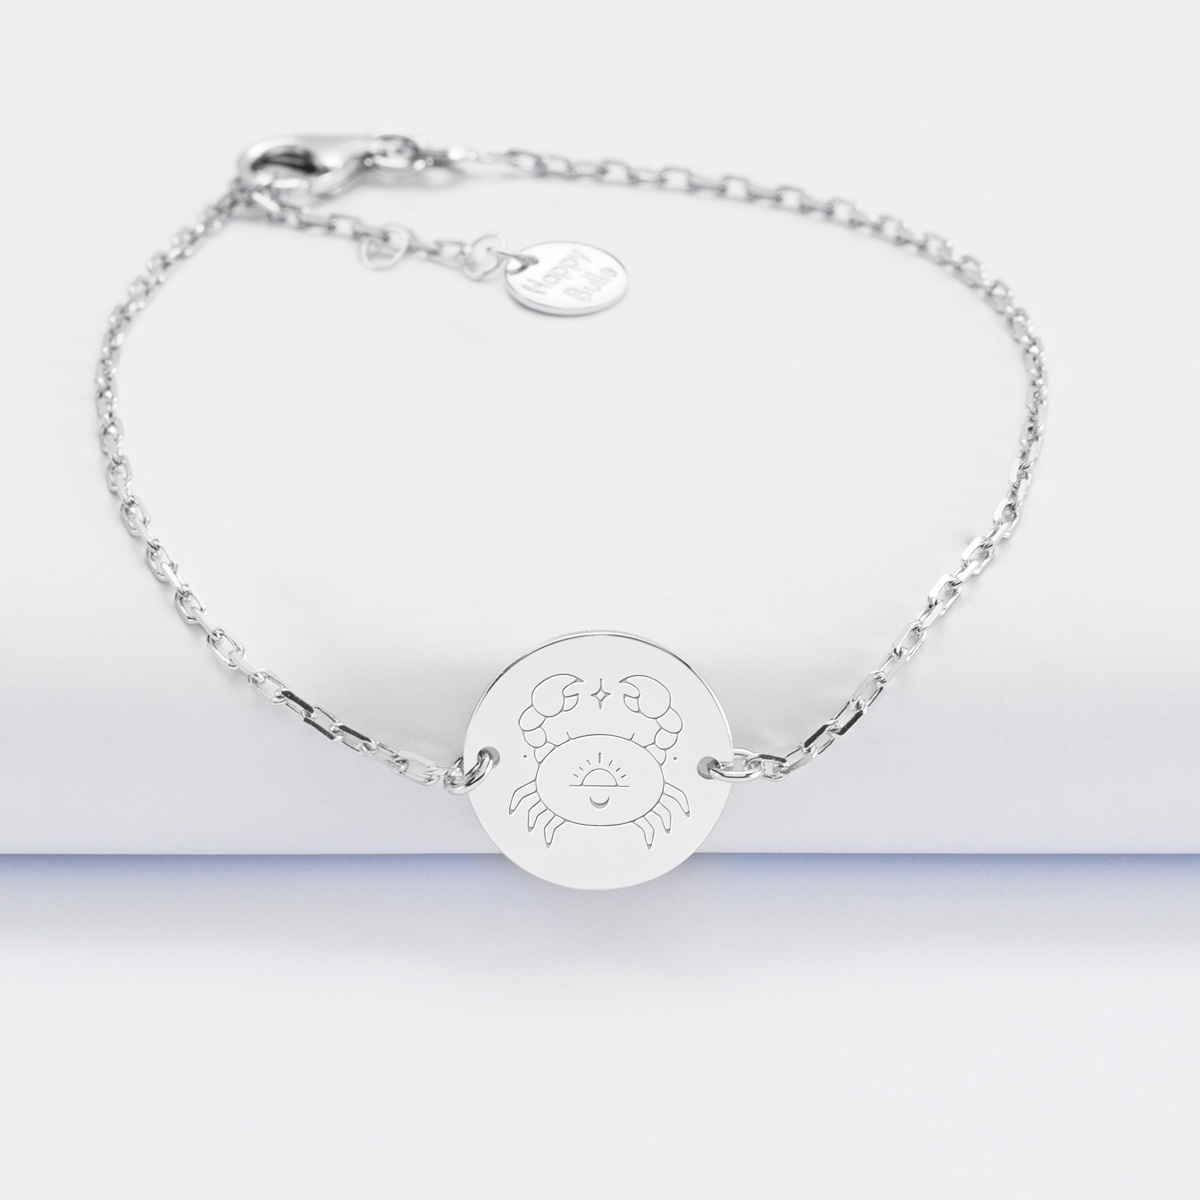 Bracelet chaine personnalisé médaille gravée argent 2 trous 15 mm - Edition spéciale Astro cancer